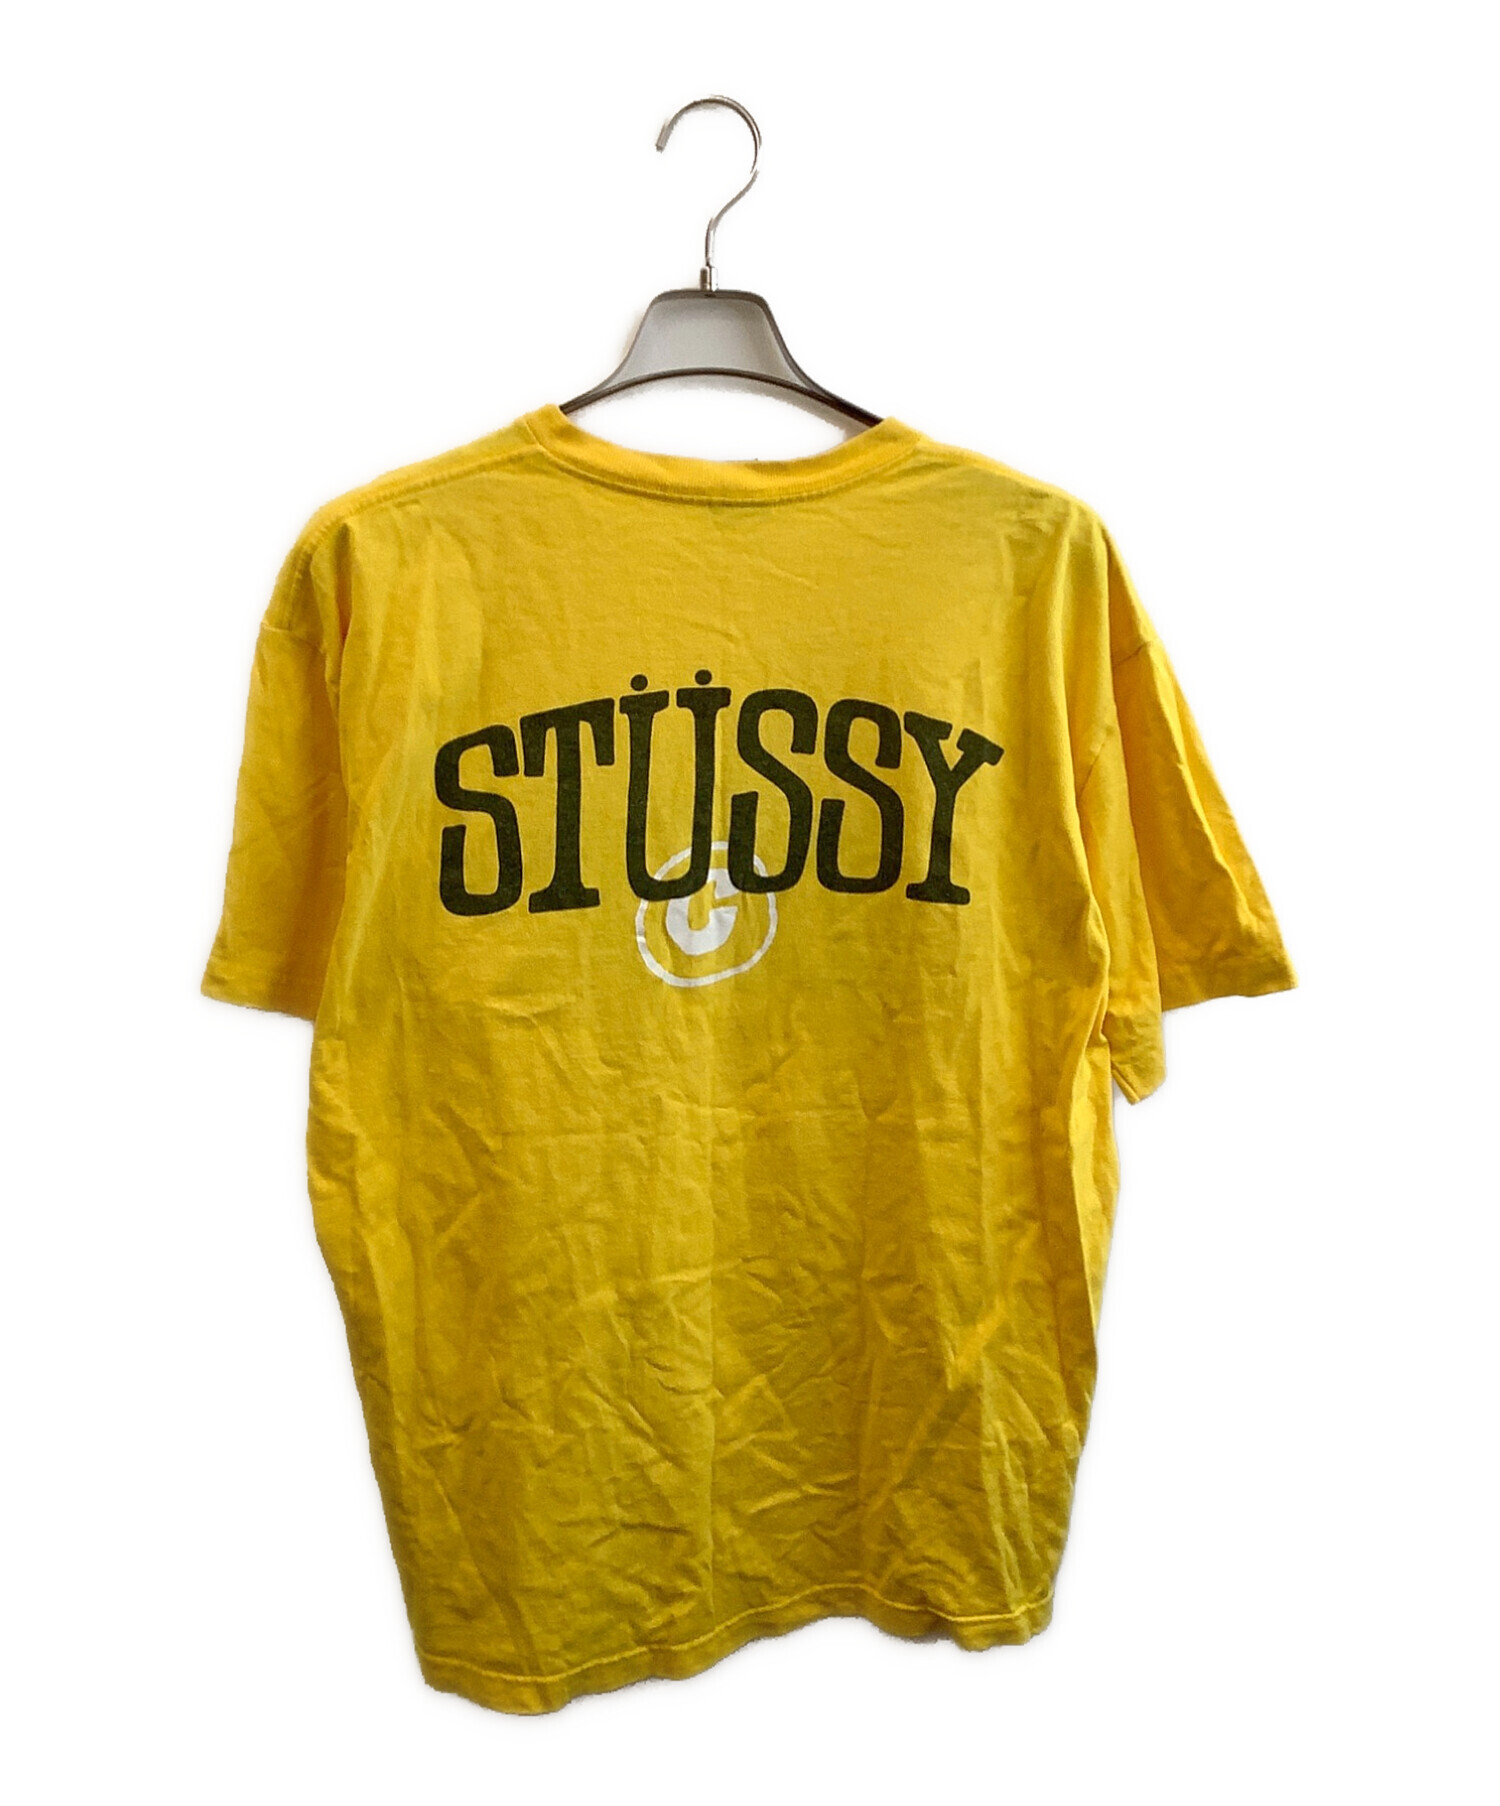 中古・古着通販】stussy (ステューシー) ヴィンテージTシャツ イエロー